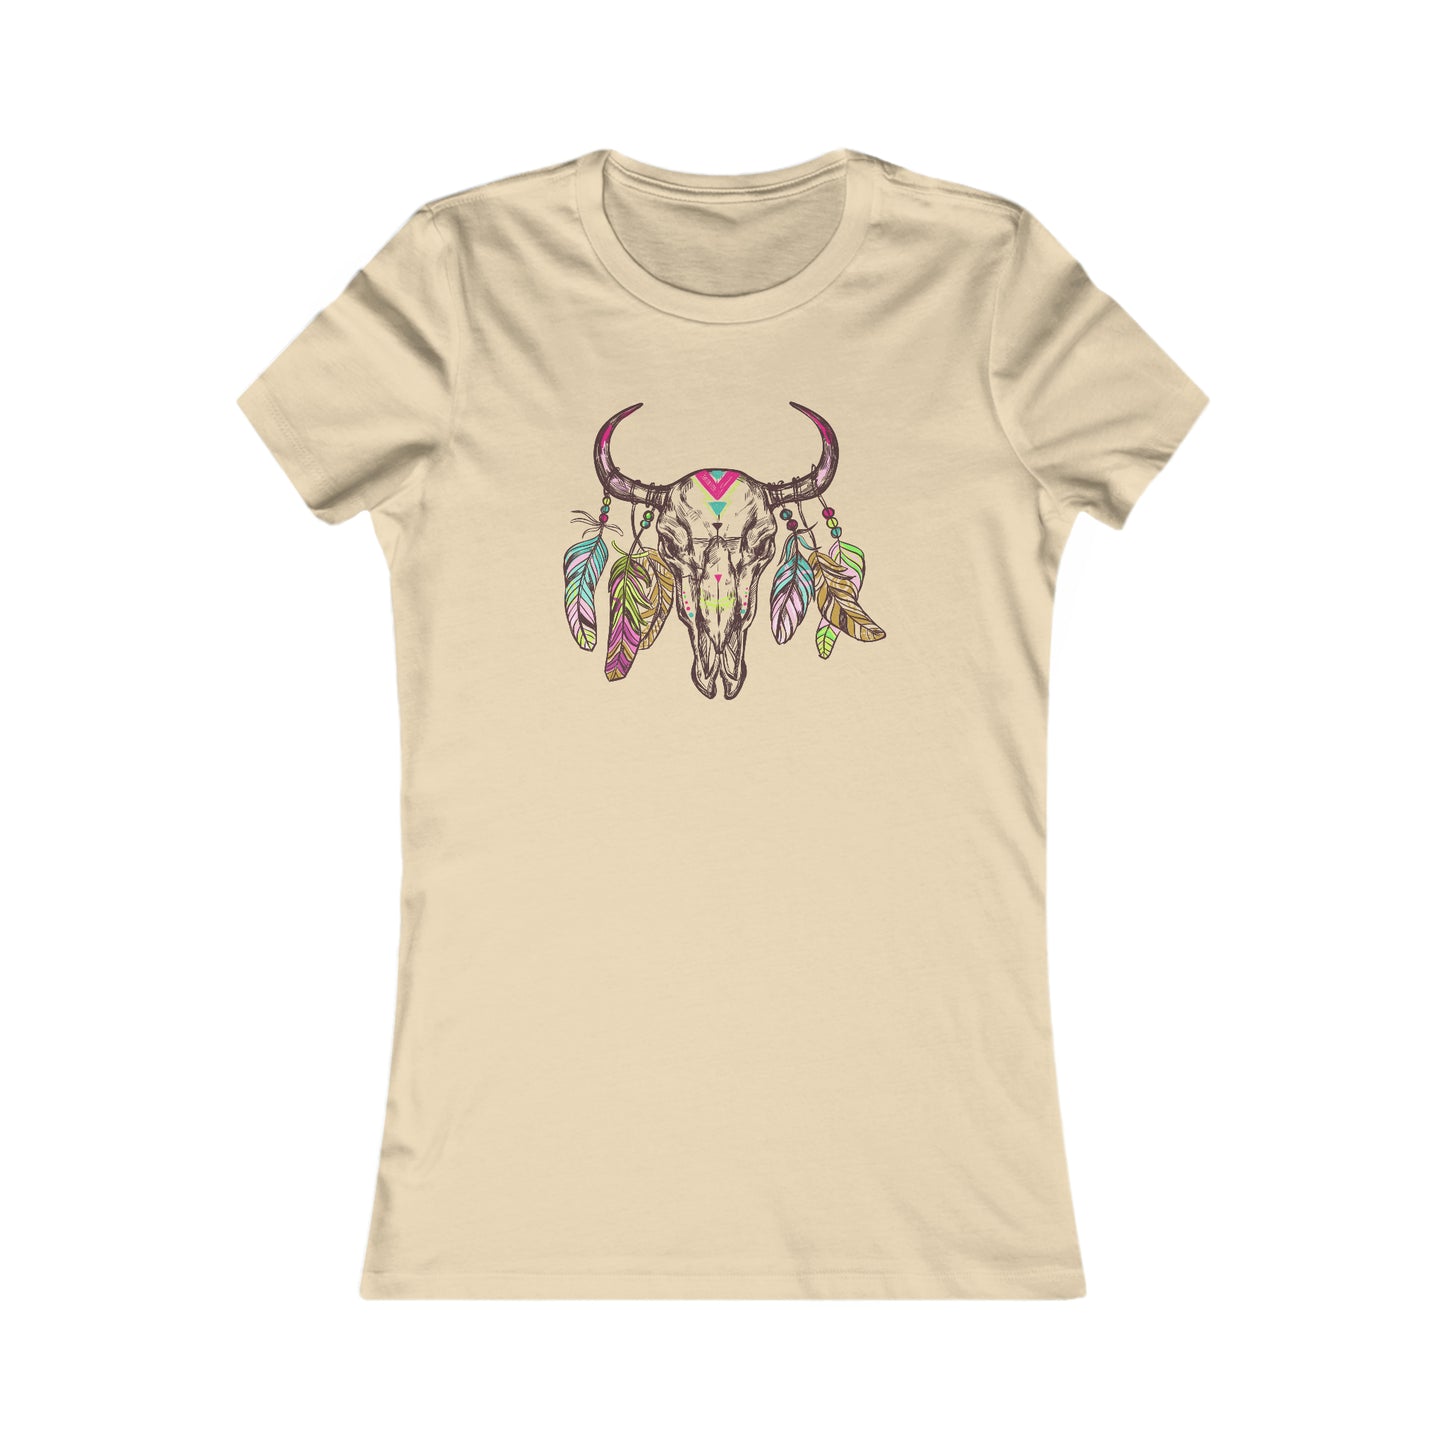 BOHO T-Shirt For Bohemian T Shirt For Steer TShirt For Skull Shirt For Woman Tee For Girl Gift